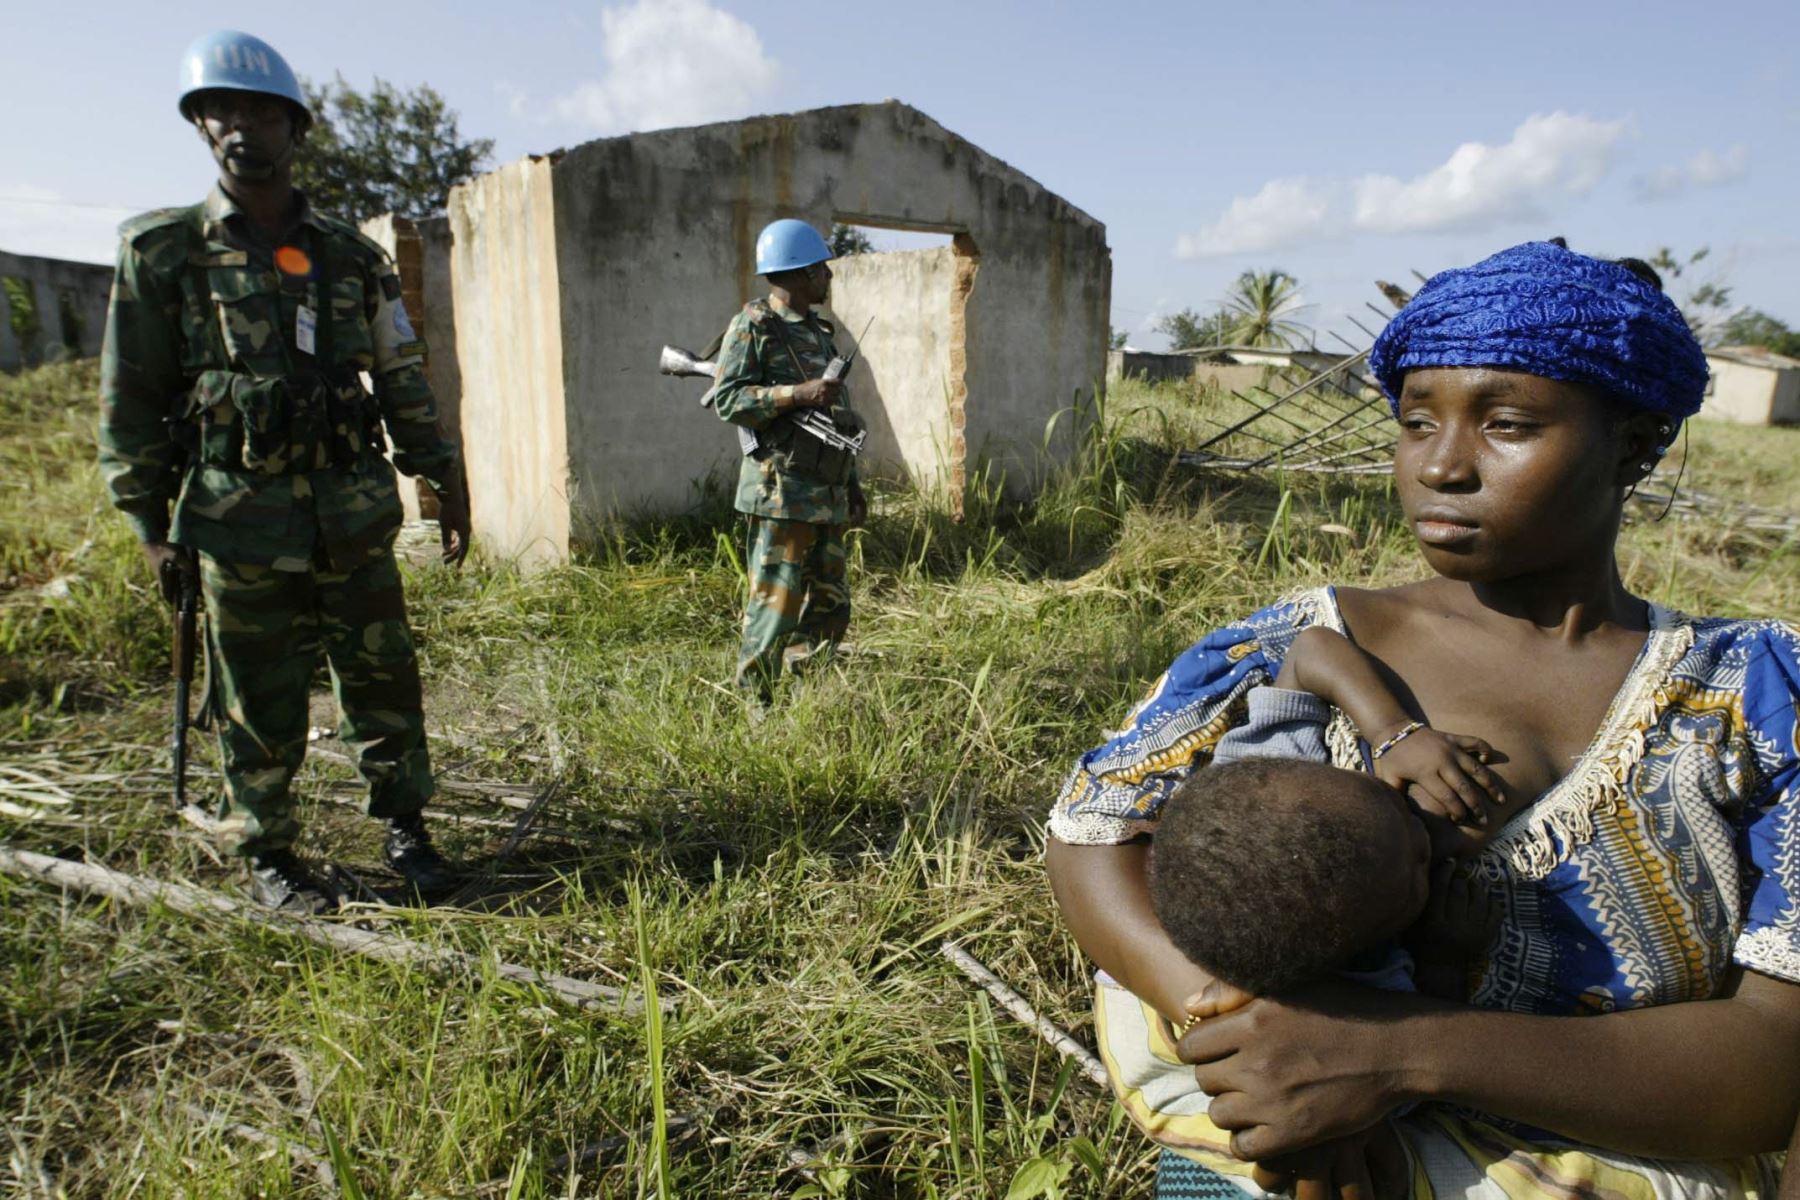 "La respuesta contundente de las fuerzas de paz obligó a huir a los cobardes agresores", dijo el comunicado de la MINUSMA. Foto: AFP